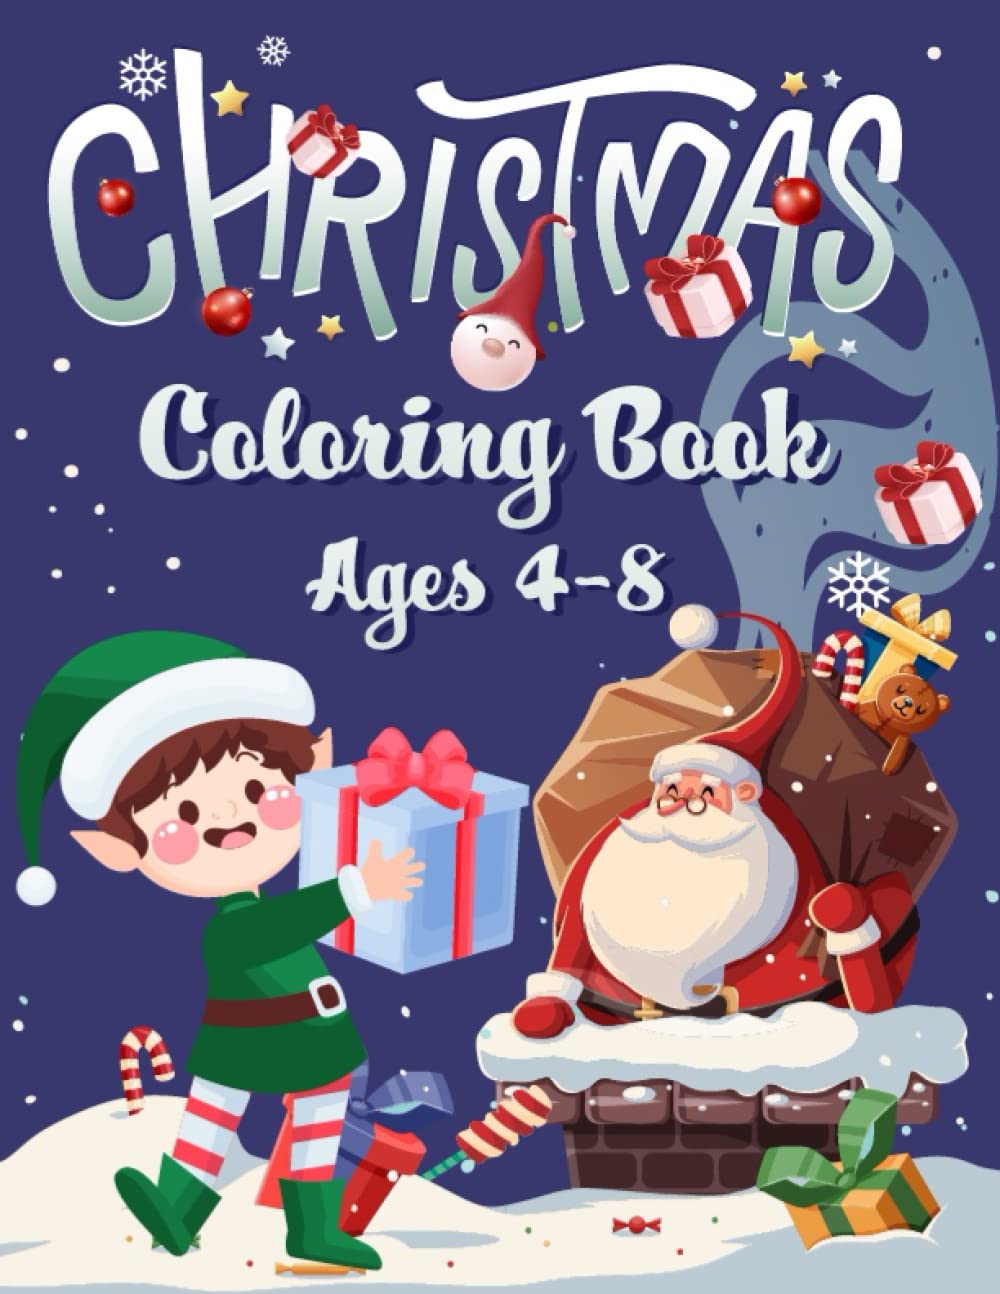 Libro: Merry Christmas - Libro para colorear de Navidad de 4 a 8 años por Raul Mendoza Rivera